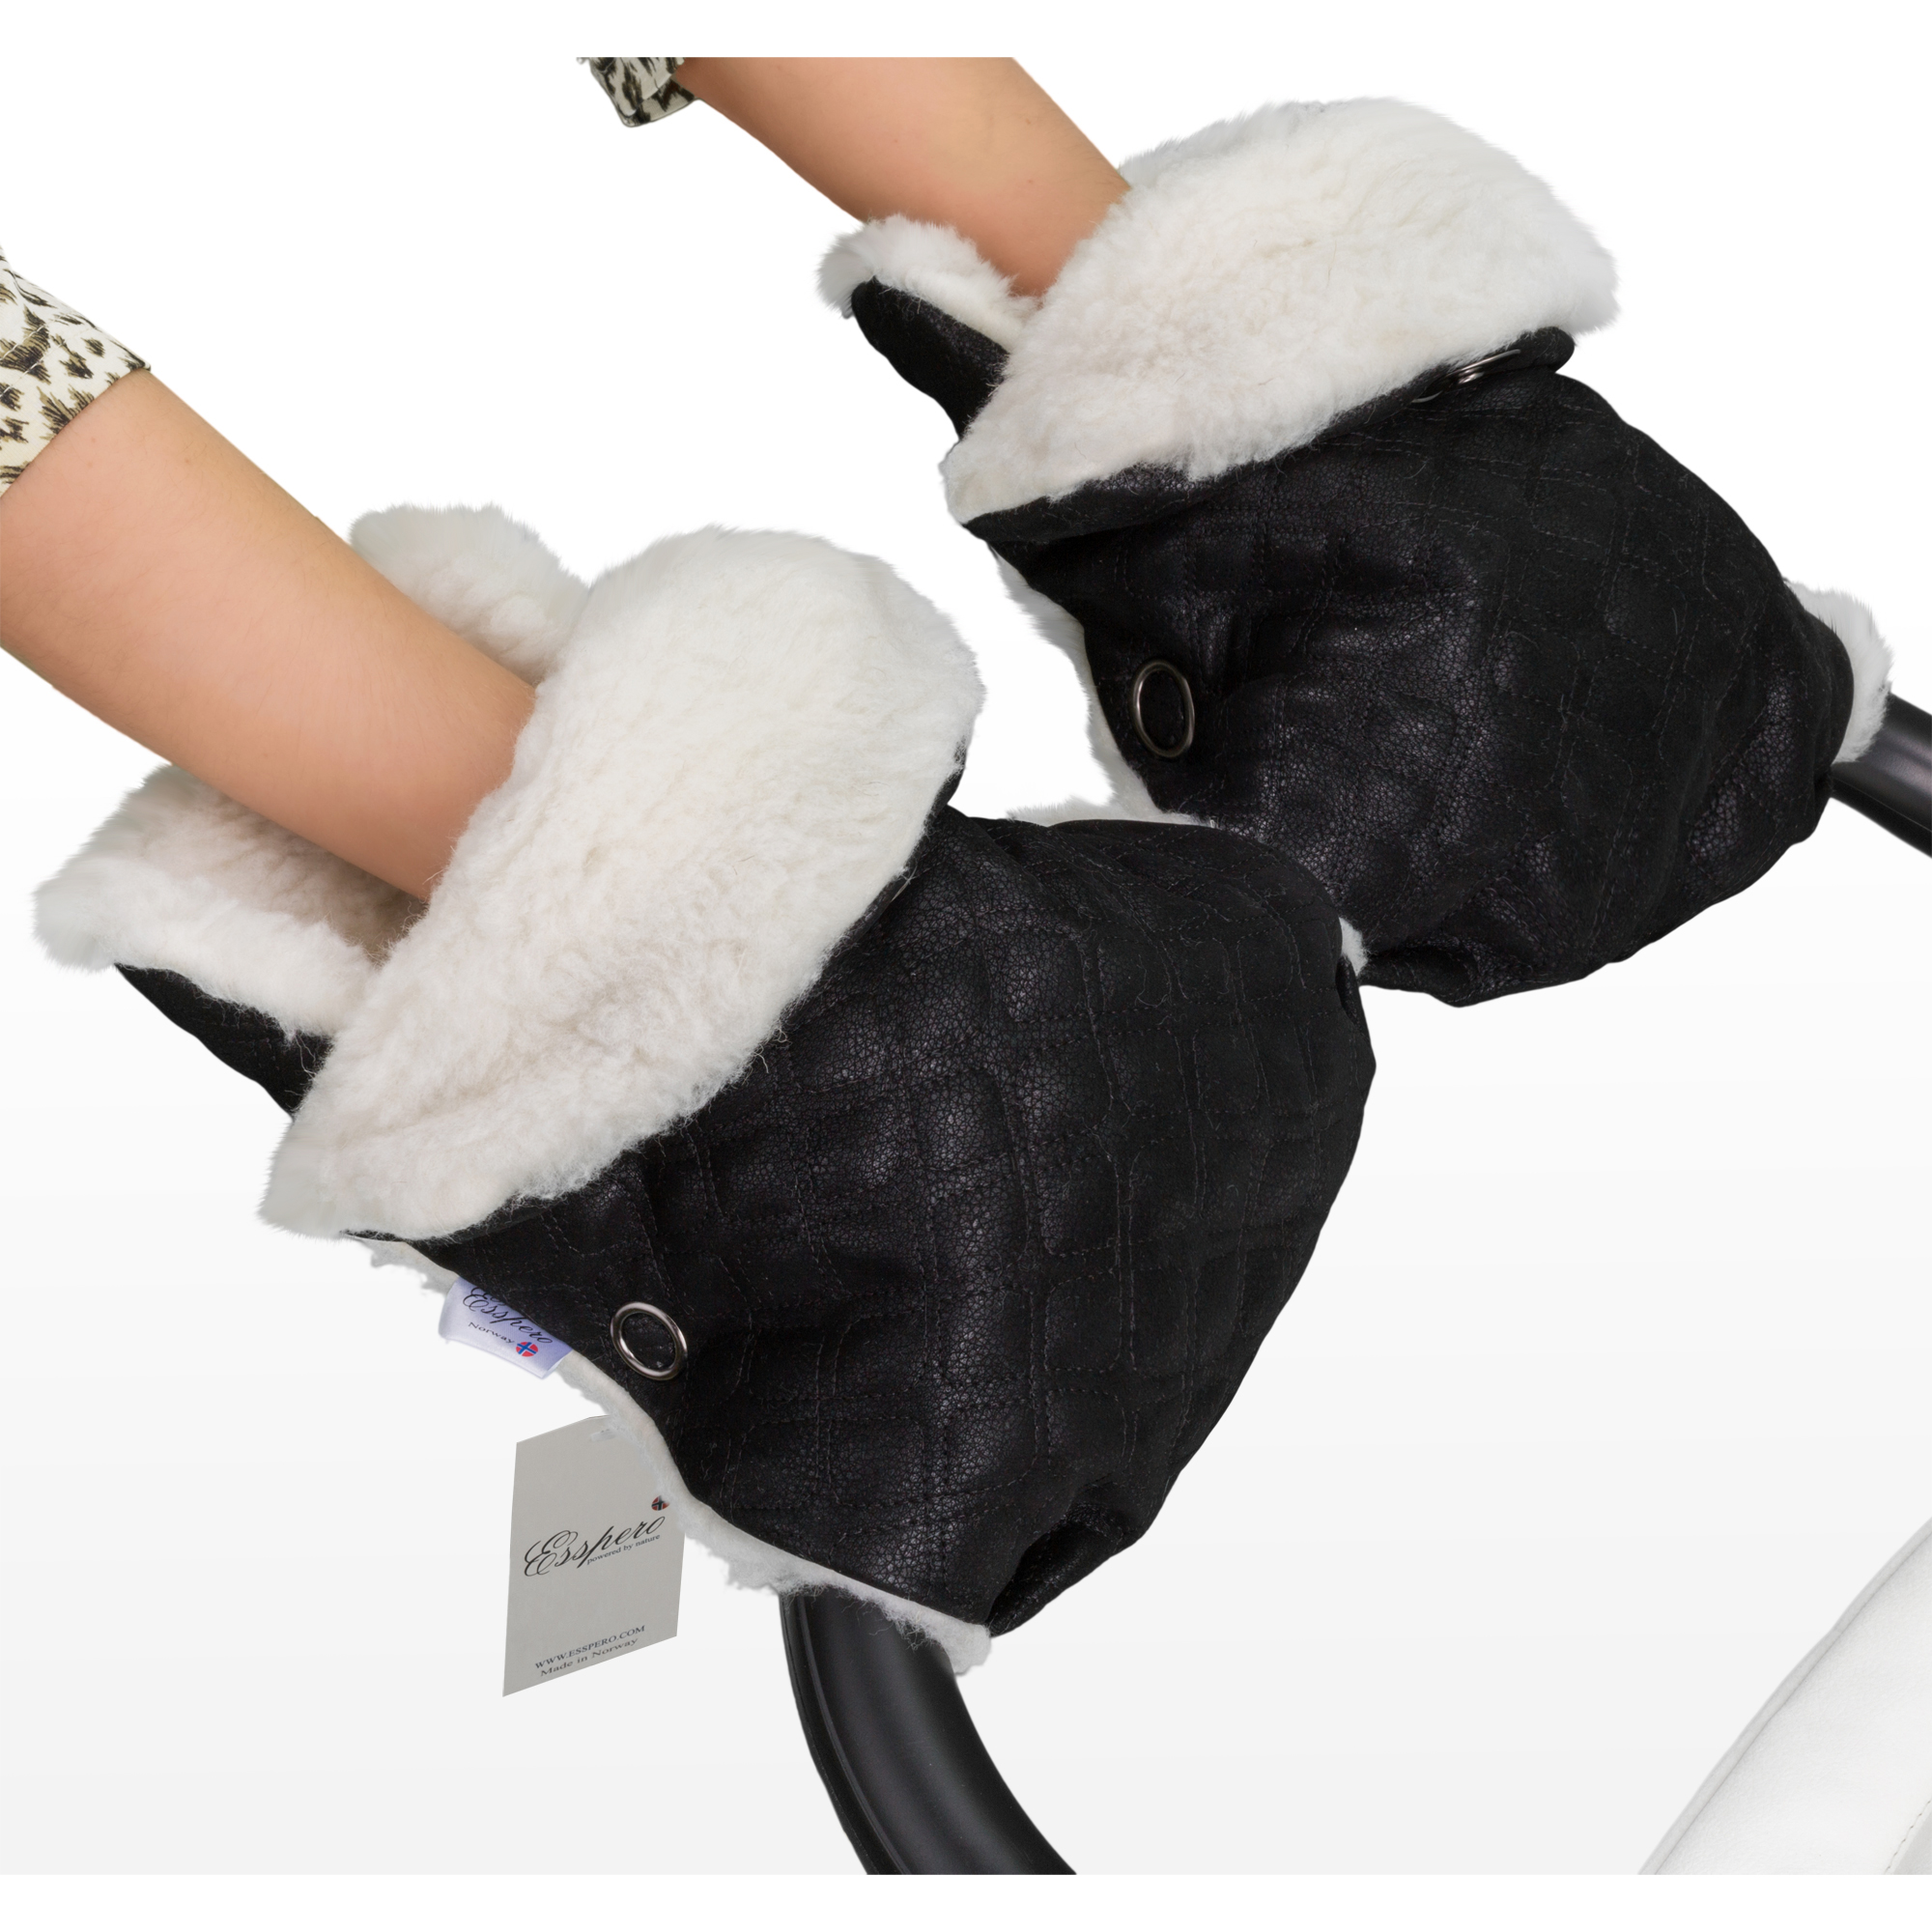 Муфта-рукавички для коляски Esspero Karolina из 100% овечьей шерсти. Фото N3